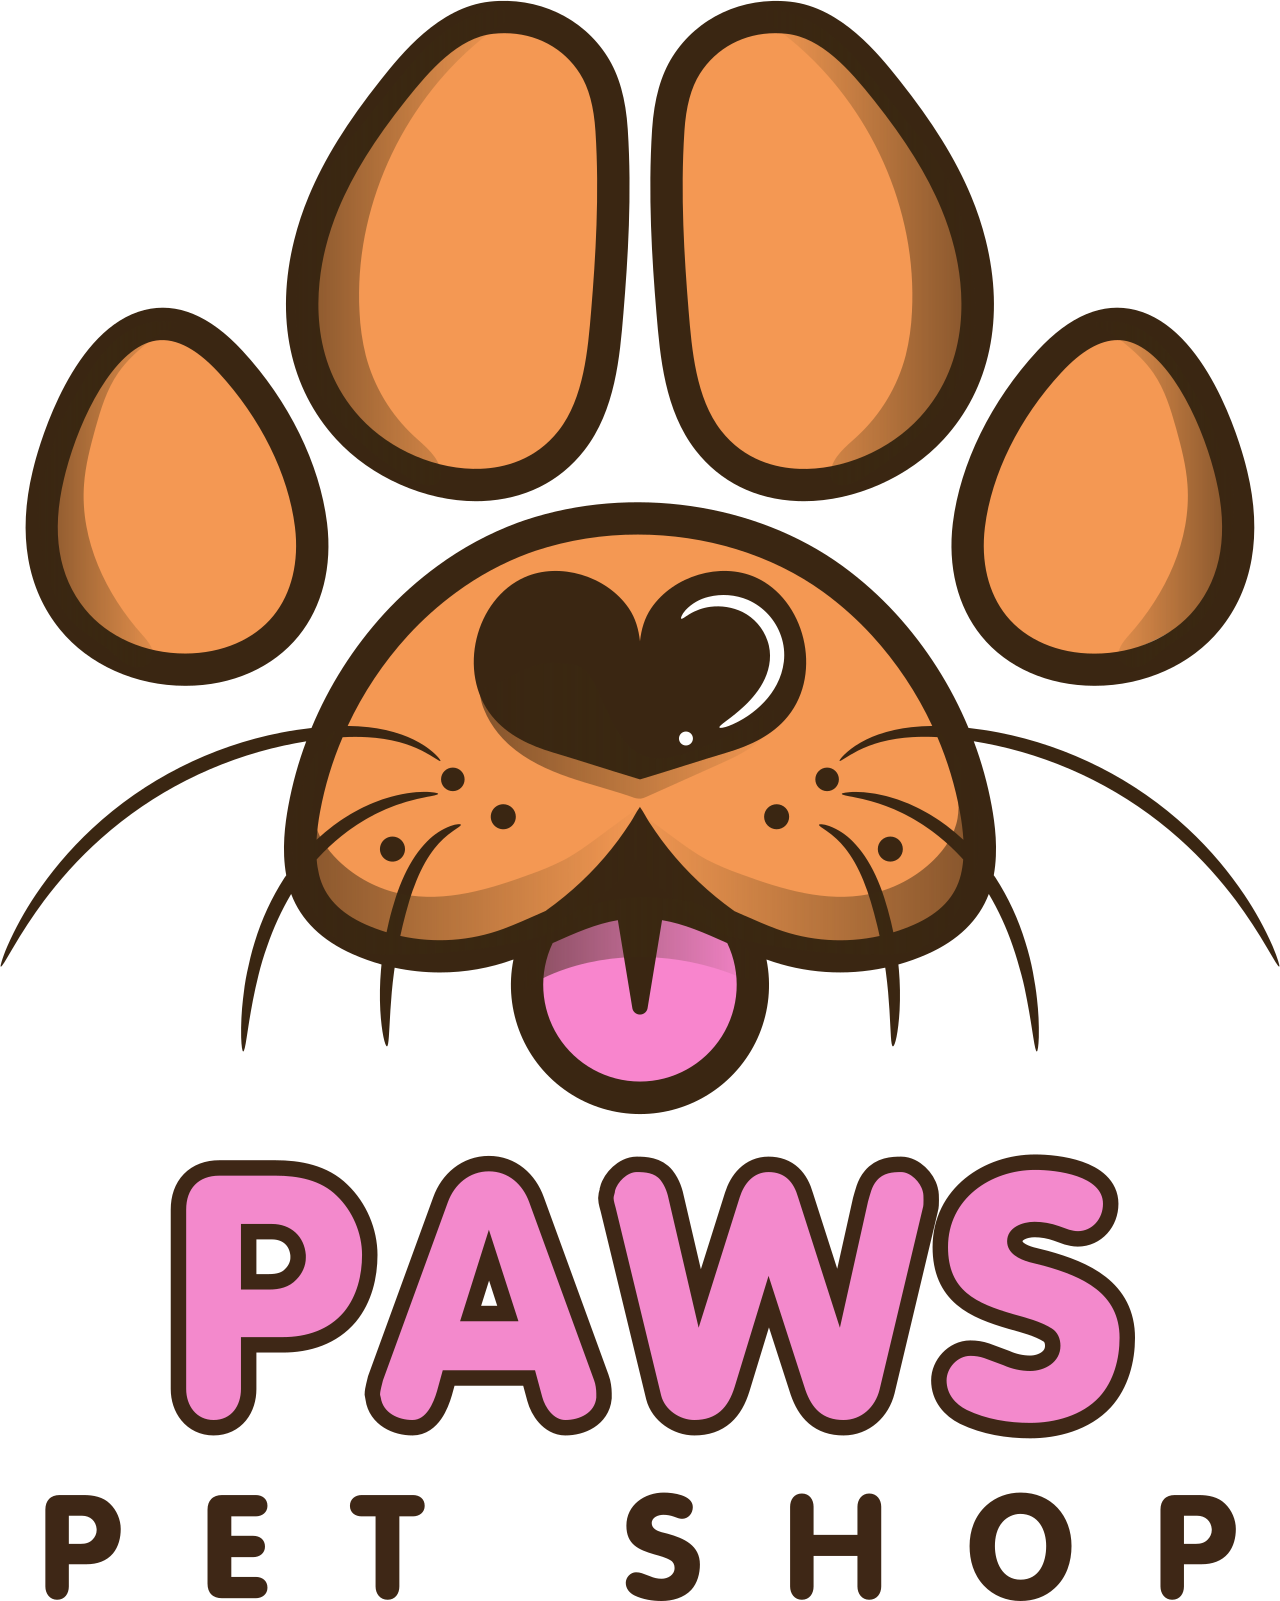 PAWS's logo